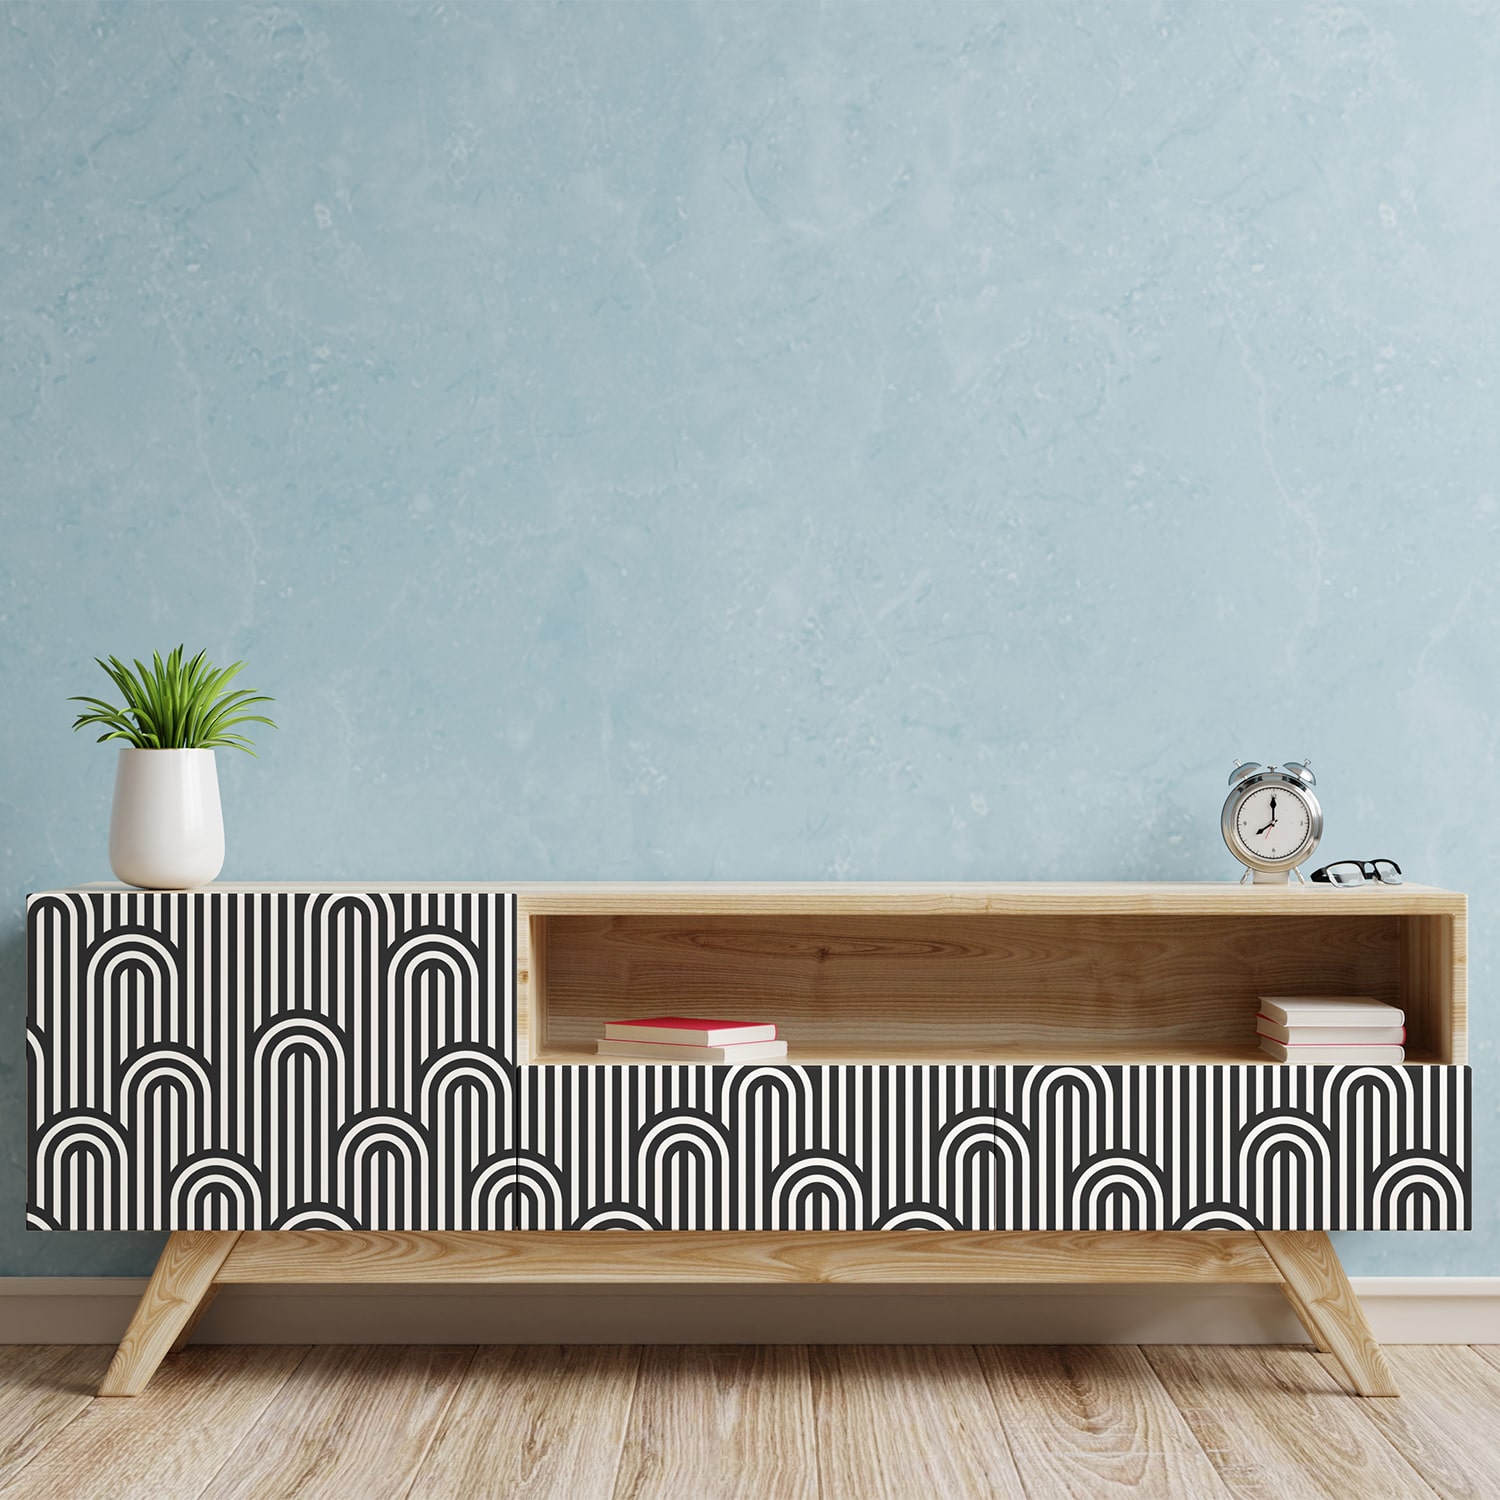 PP49-meuble-papier-peint-adhesif-decoratif-revetement-vinyle-arches-abstraites-renovation-meuble-mur-min